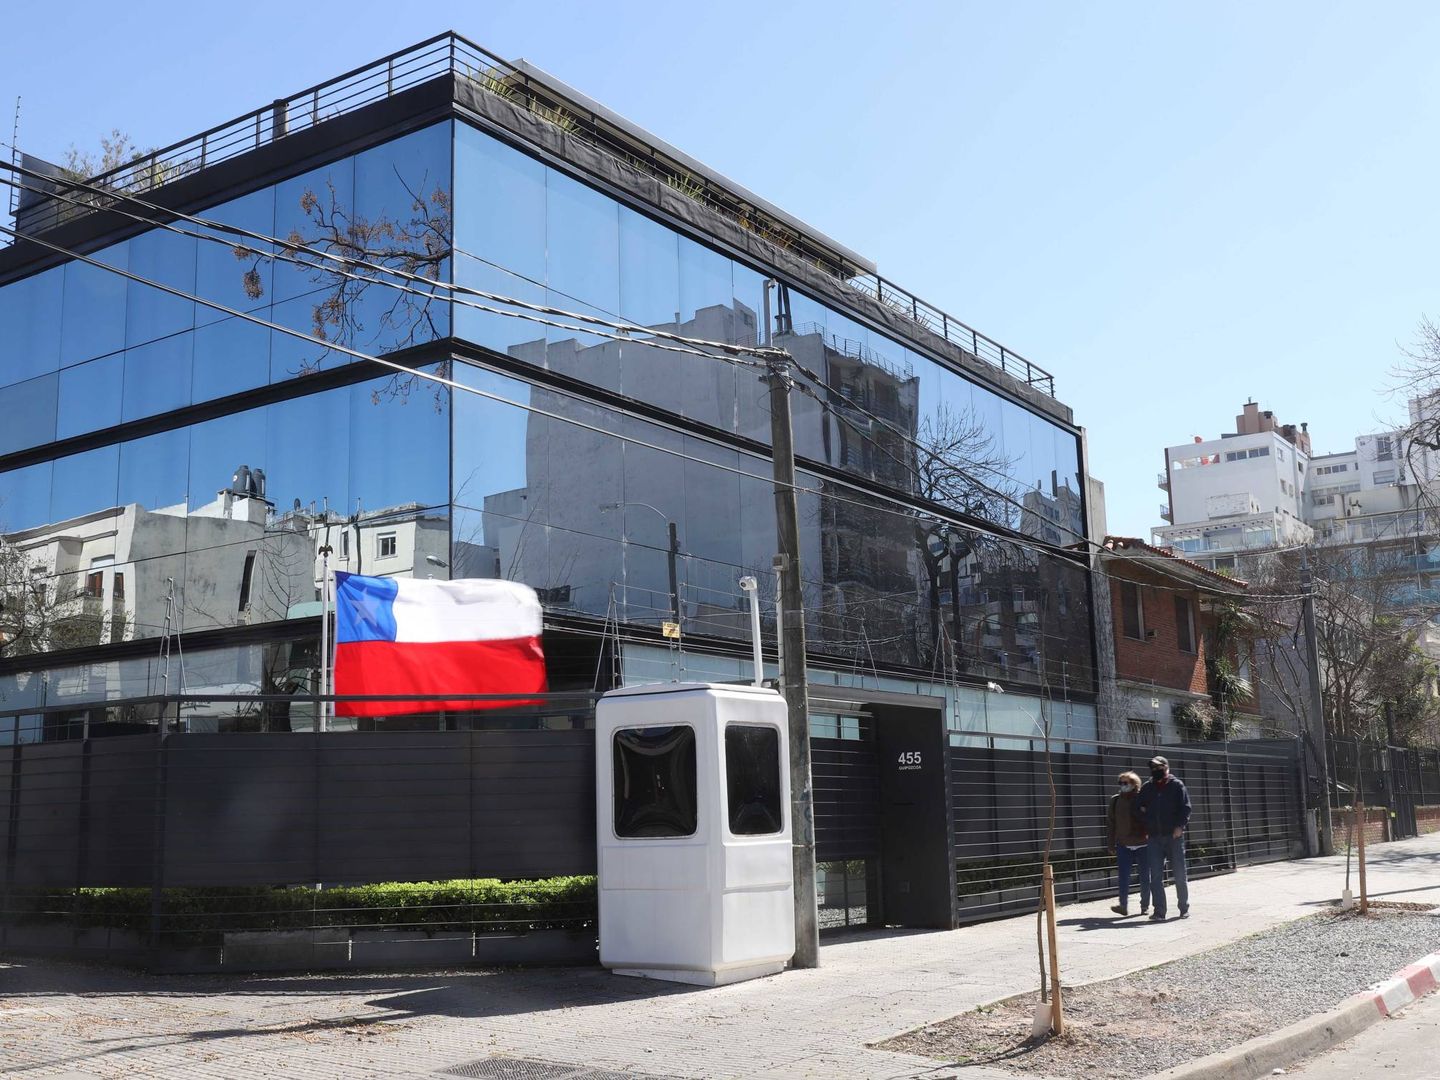 Embajada de Chile en Montevideo (Uruguay), propiedad del futbolista argentino Javier Mascherano. (Nicolás der Agopian, 'Semanario Búsqueda')